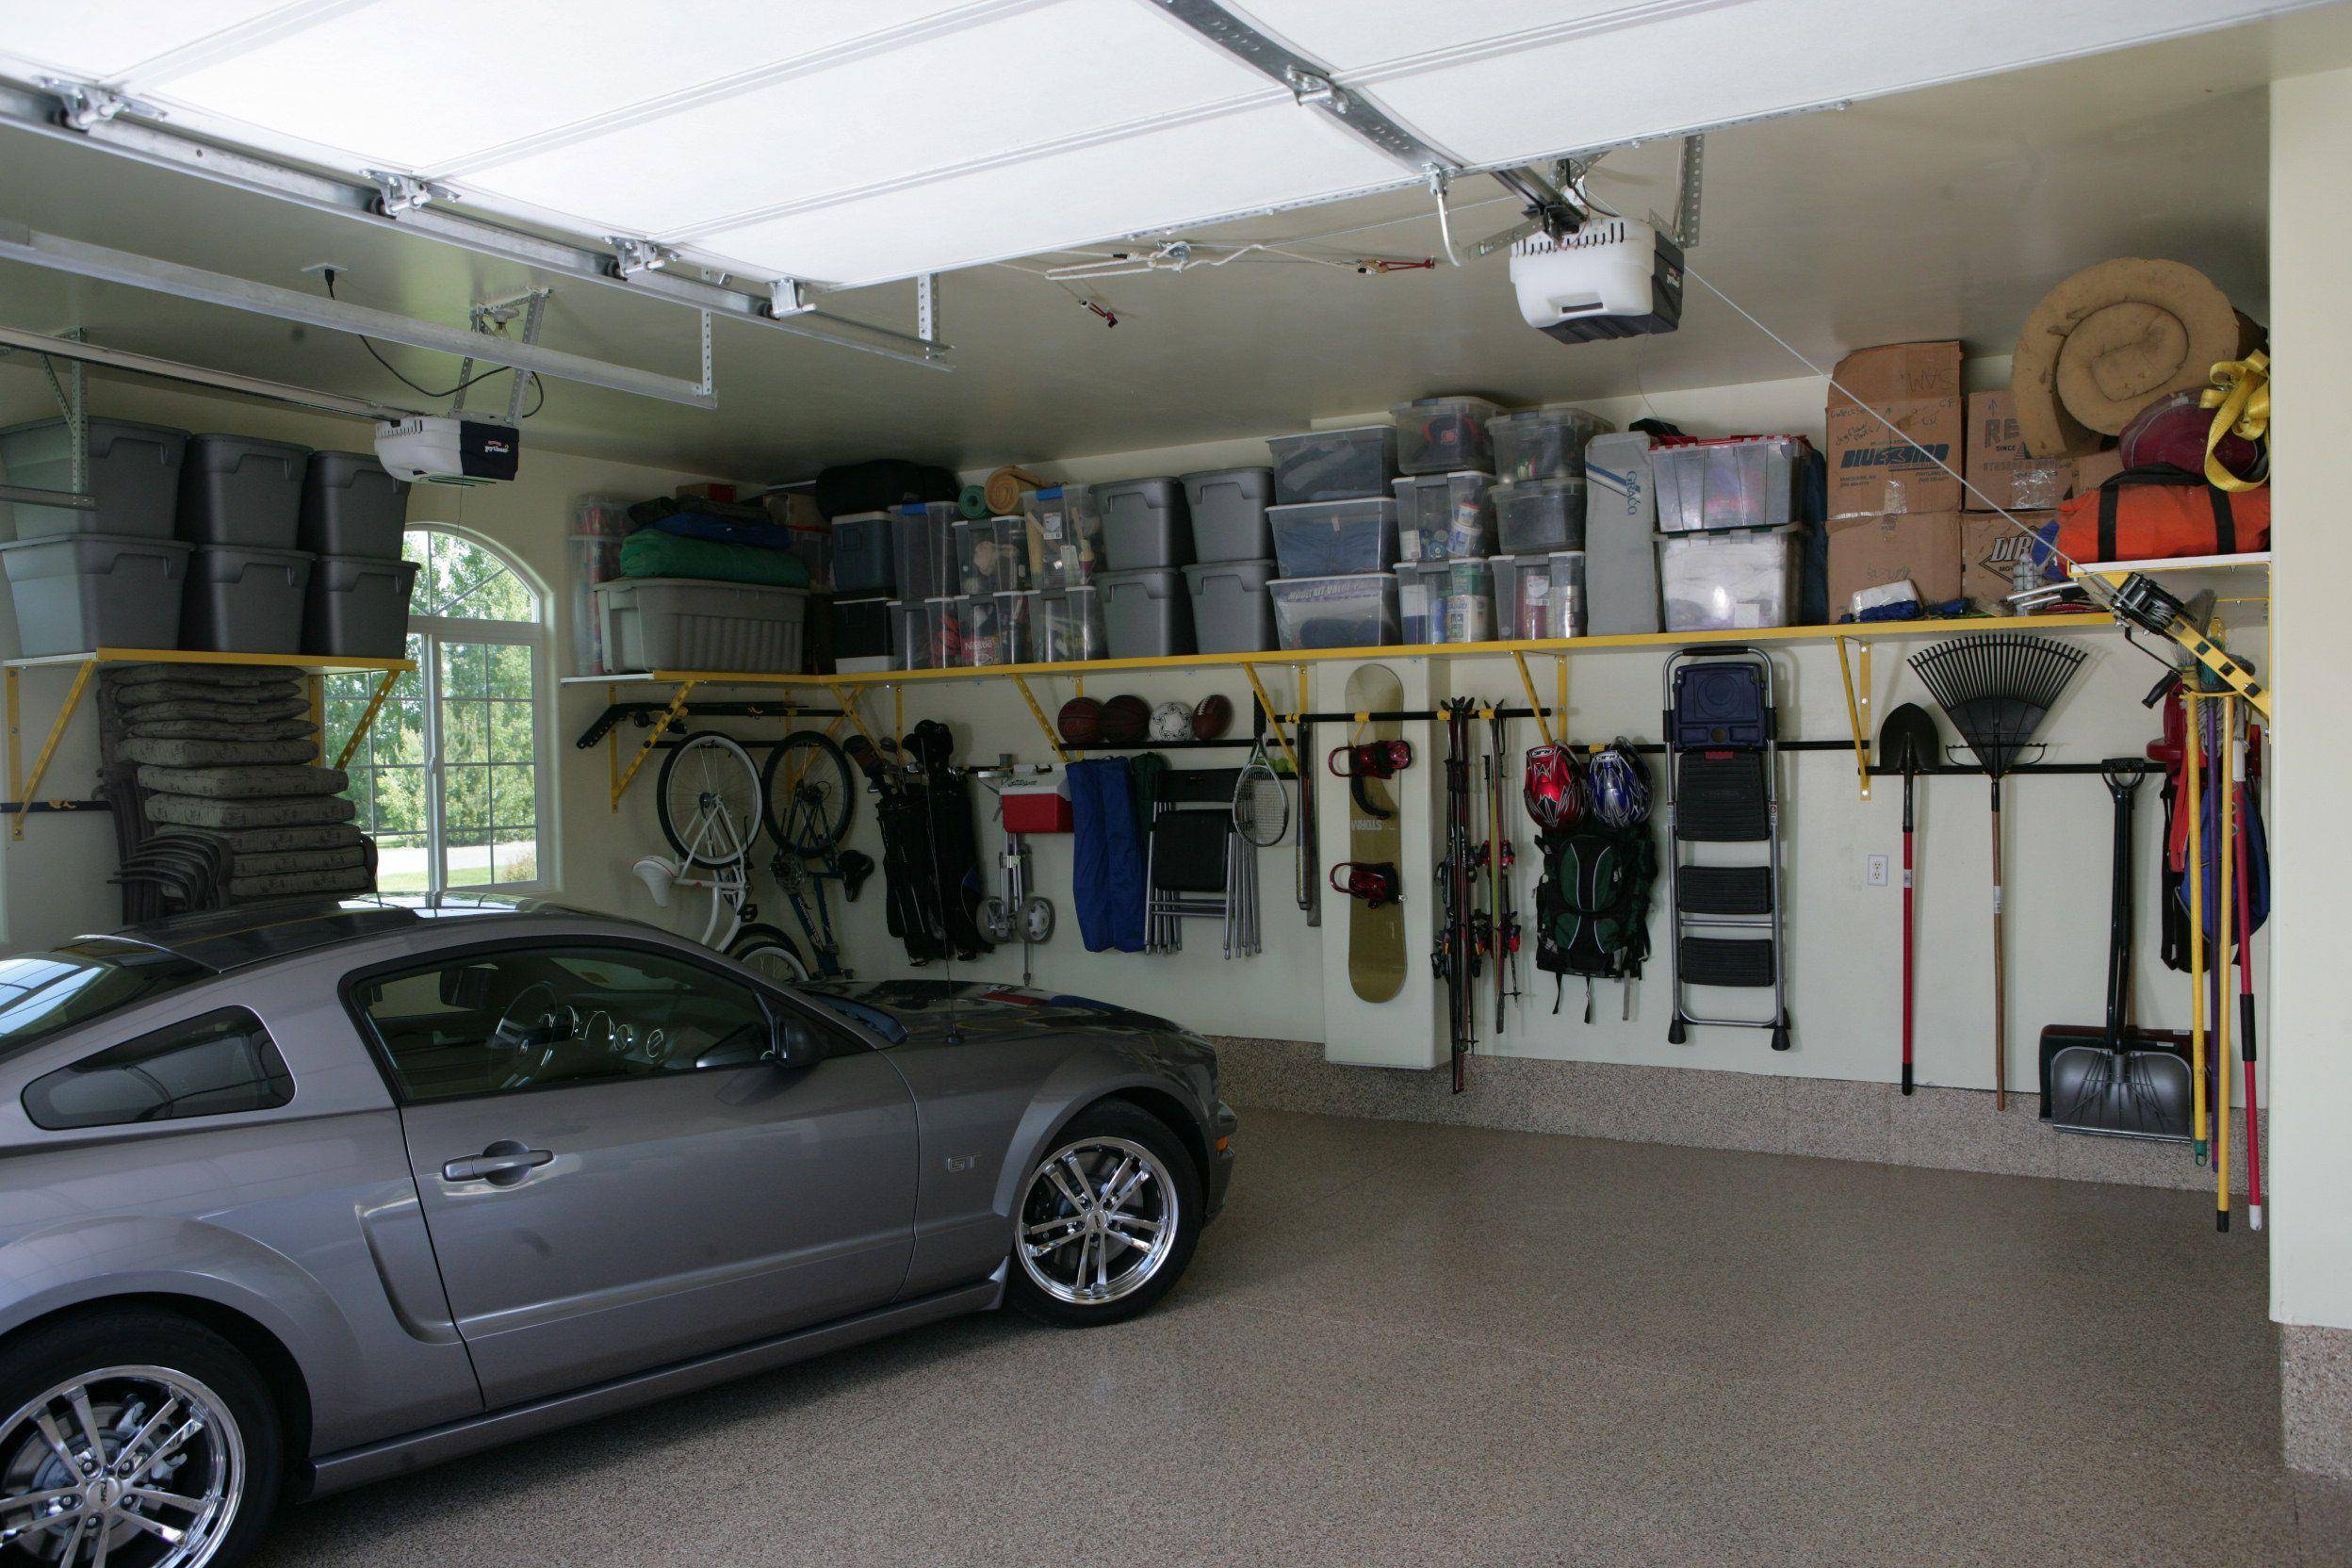 Обустройство гаража: системы хранения, мебель, дизайн | дом мечты